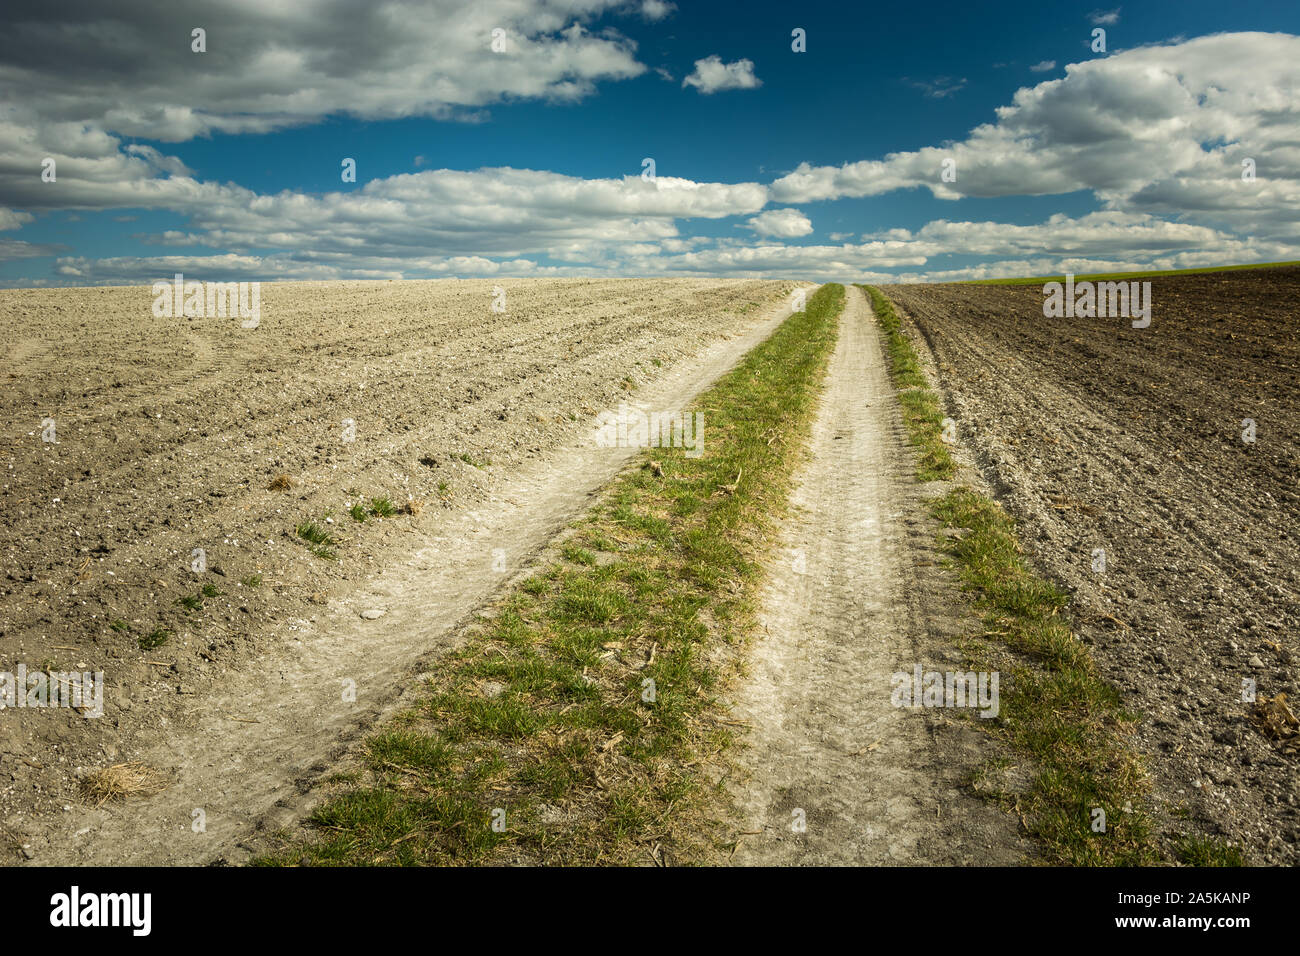 Strada rurale e di campi arati, orizzonte e nuvole nel cielo Foto Stock